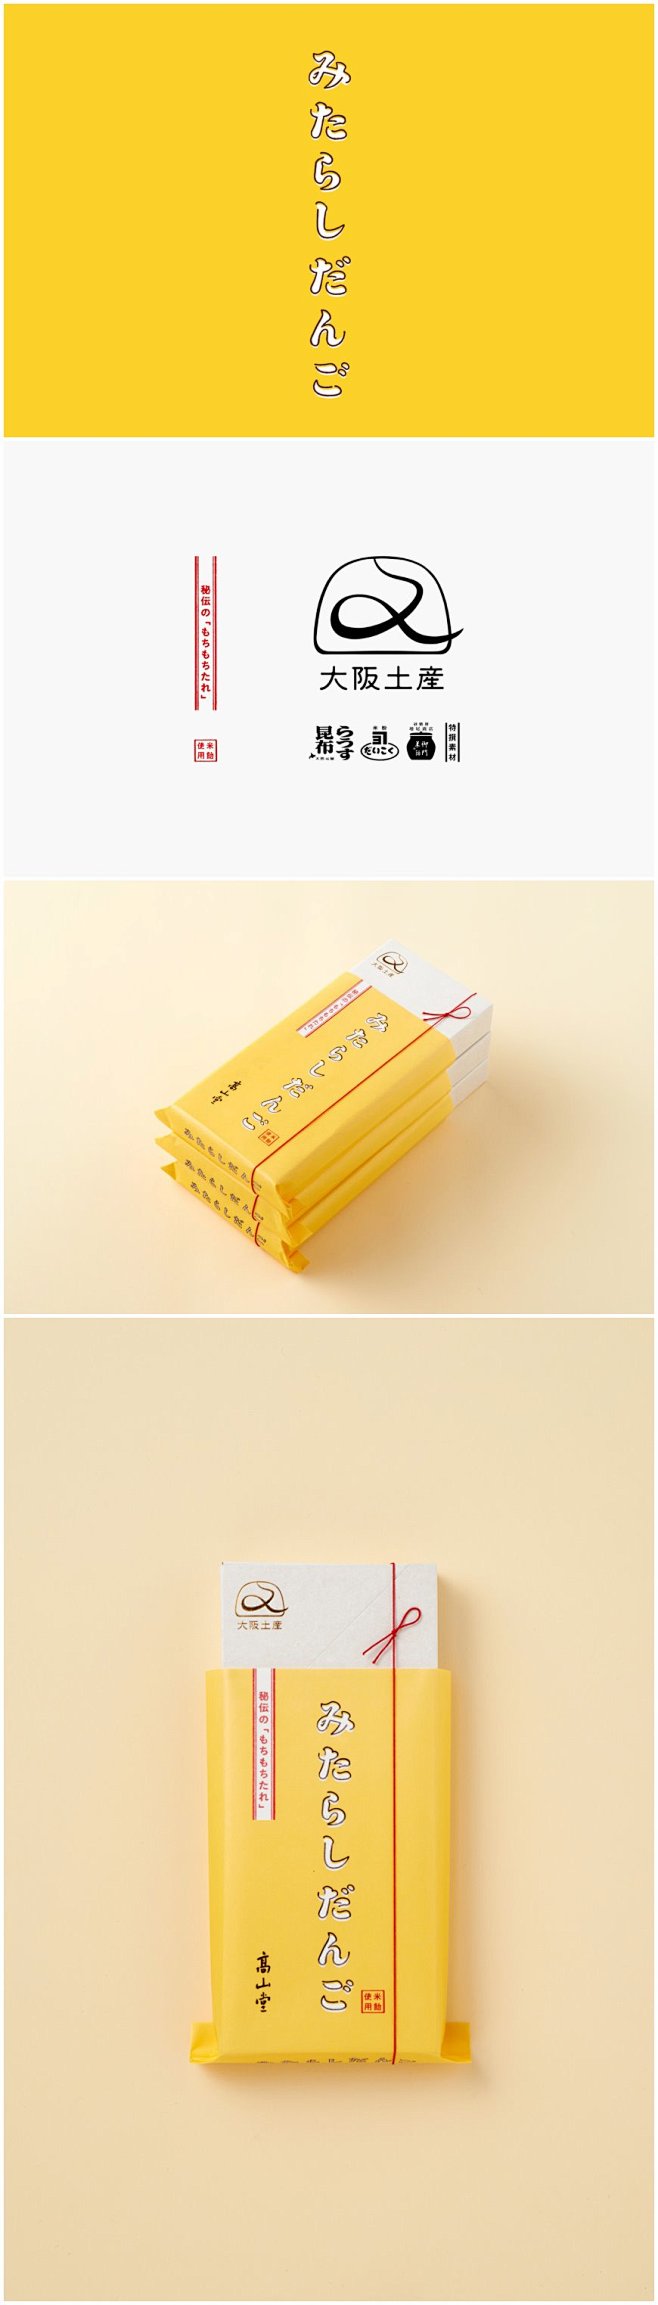 清新暖黄的米团子品牌包装设计#设计# #...